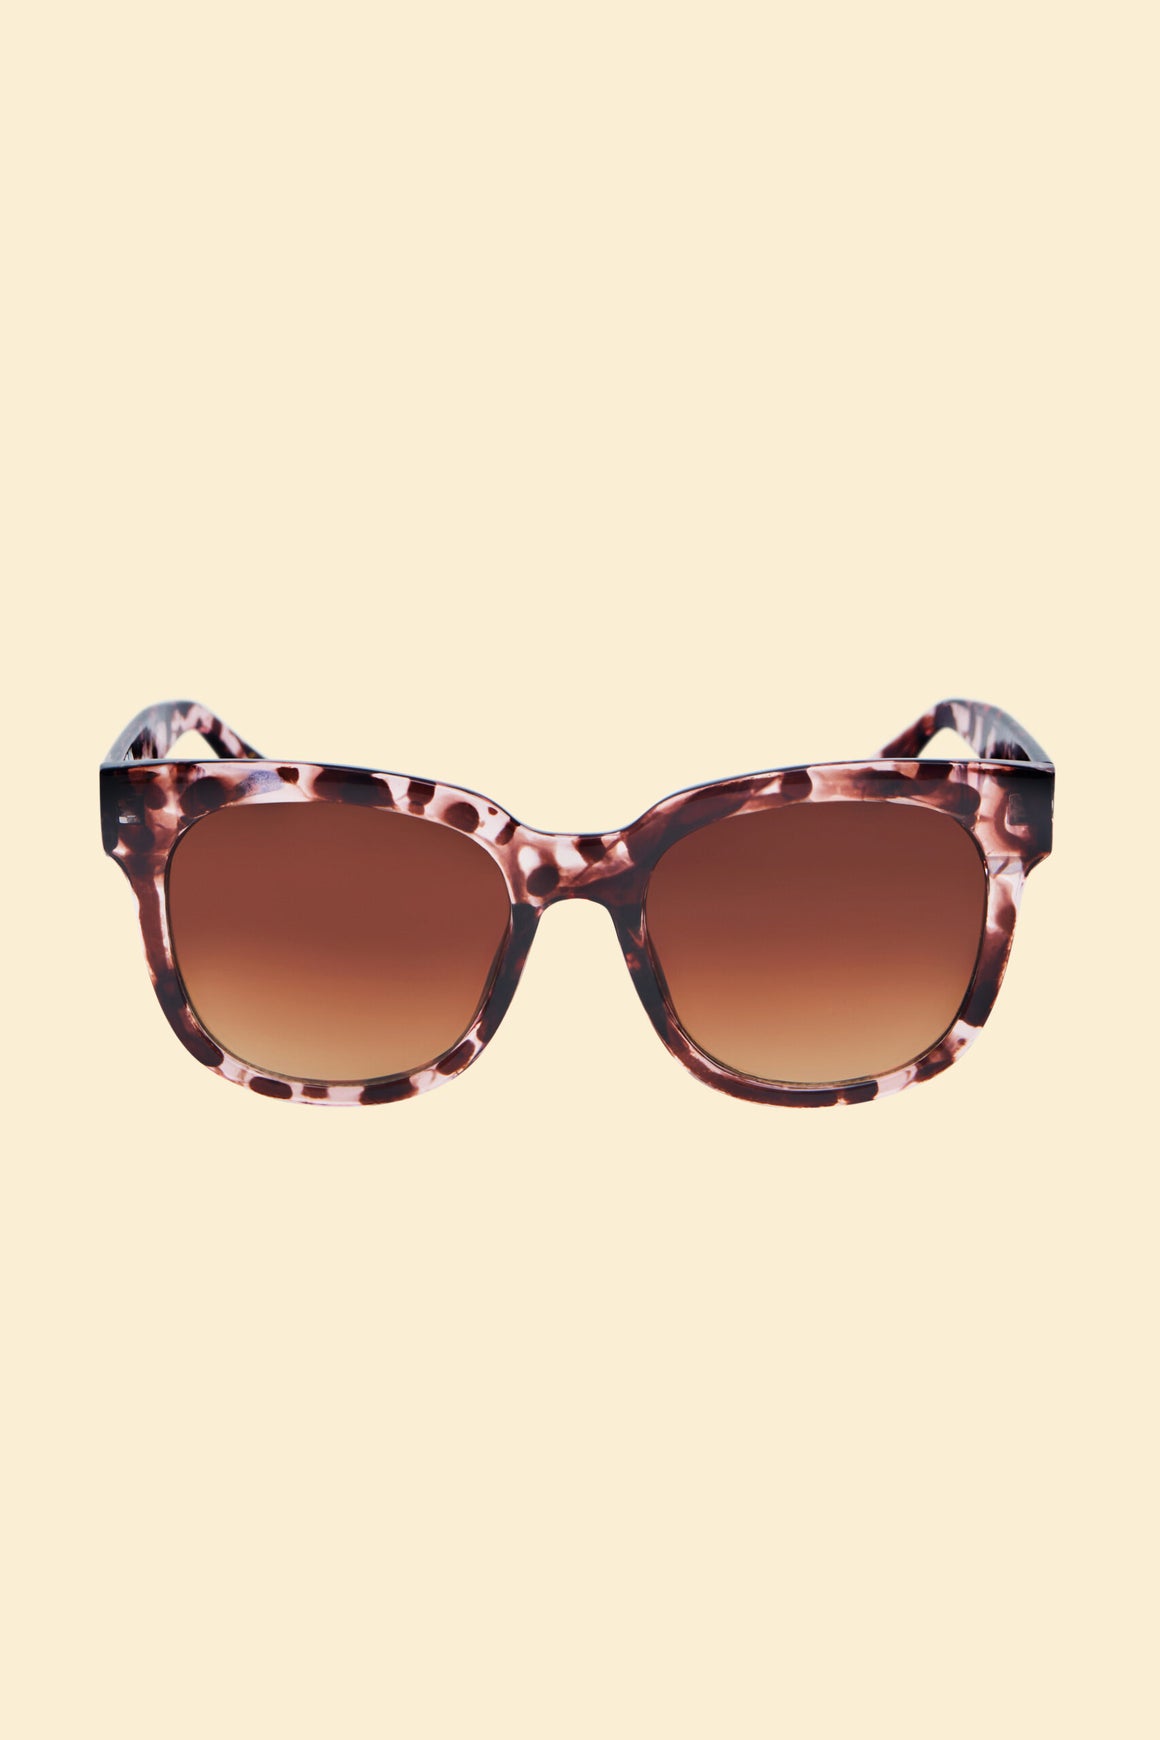 Elena Limited Edition Sunglasses - Tortoiseshell - Powder Design